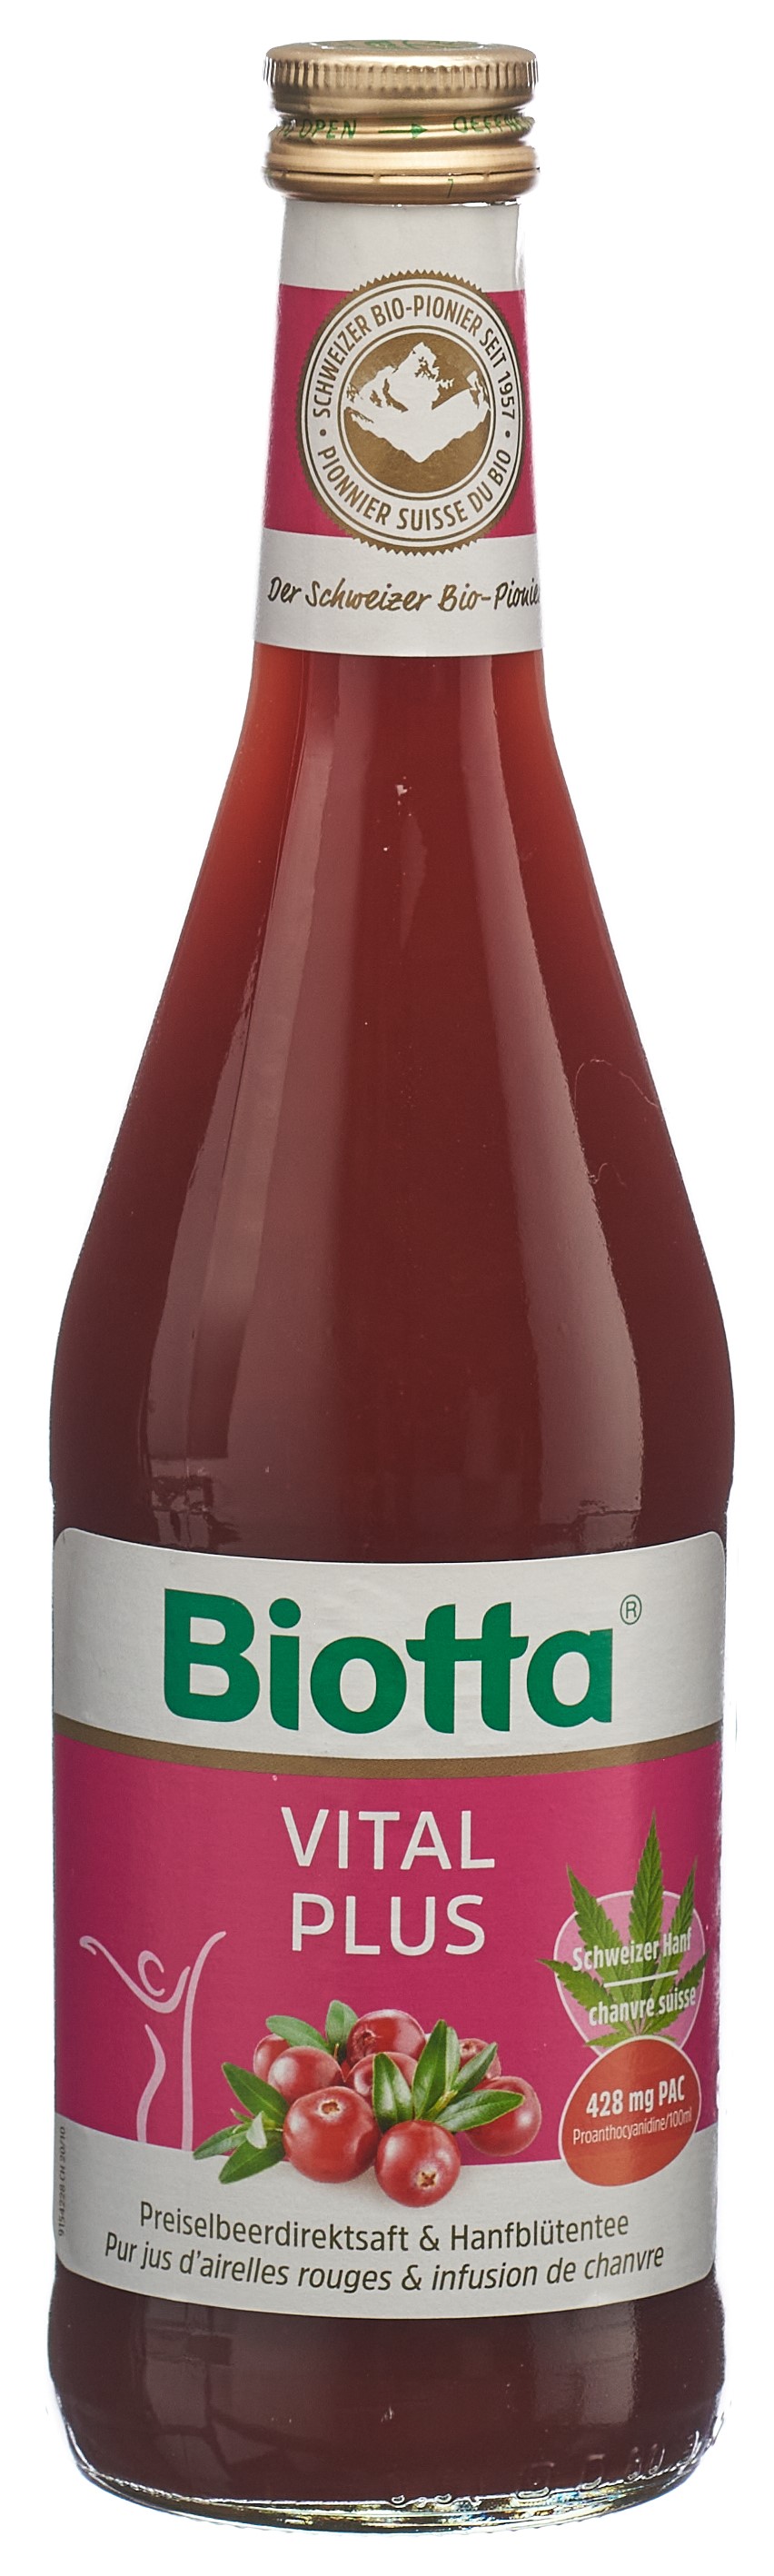 BIOTTA Vital Plus Preiselbeere & Hanf 5 dl